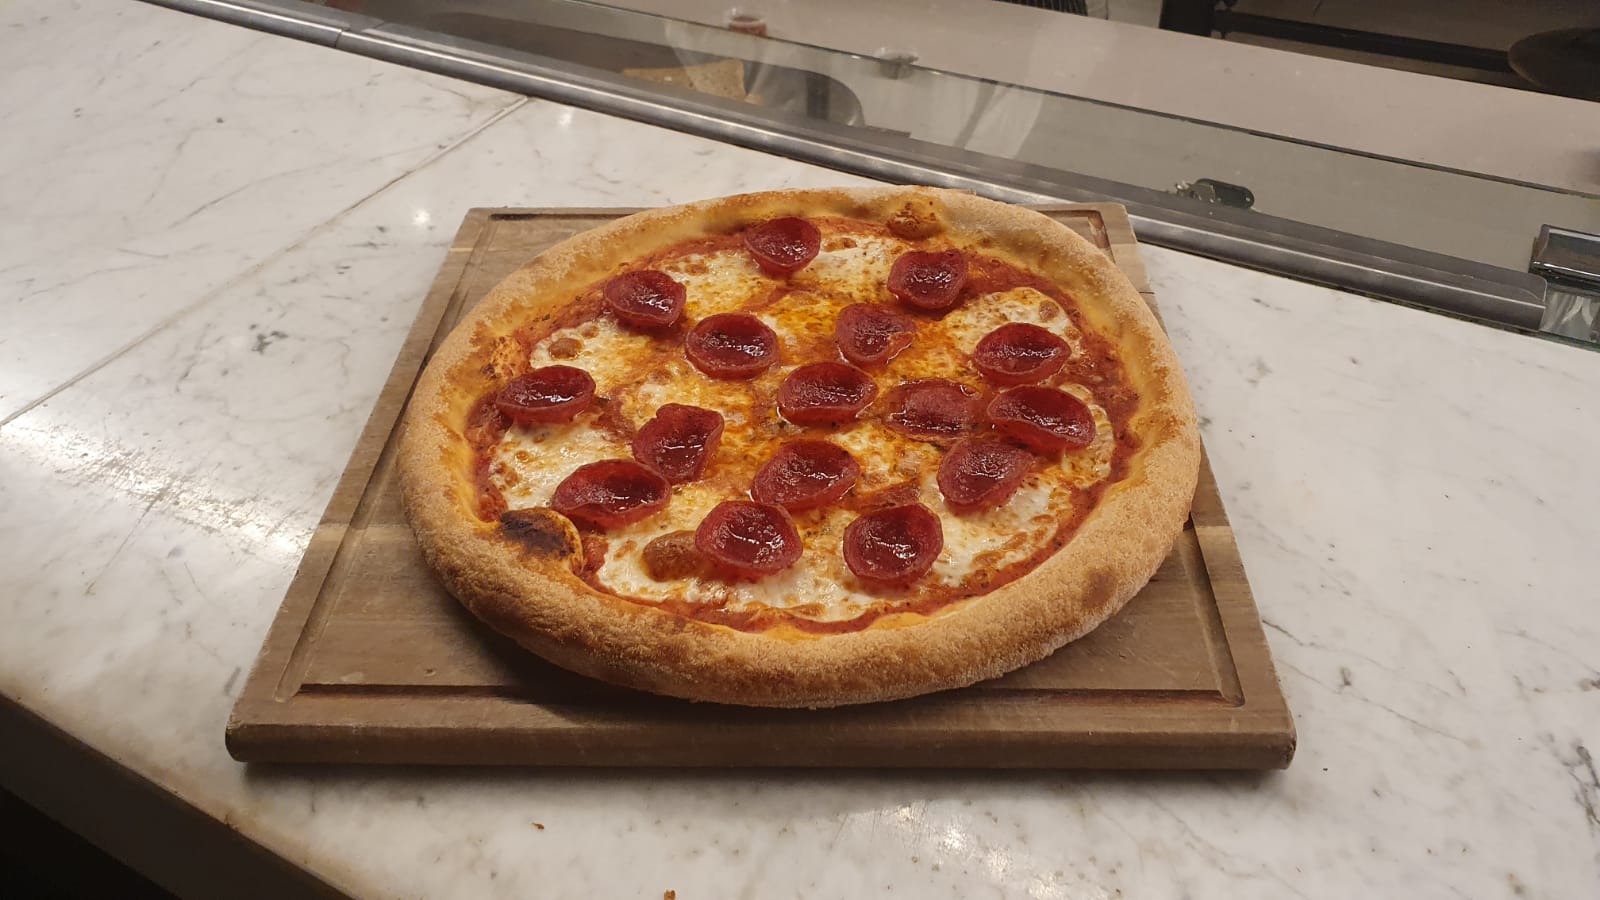 يافا: البيتزا الايطالية وأشهى الوجبات تصلكم الى بيوتكم من مطعم صقلية